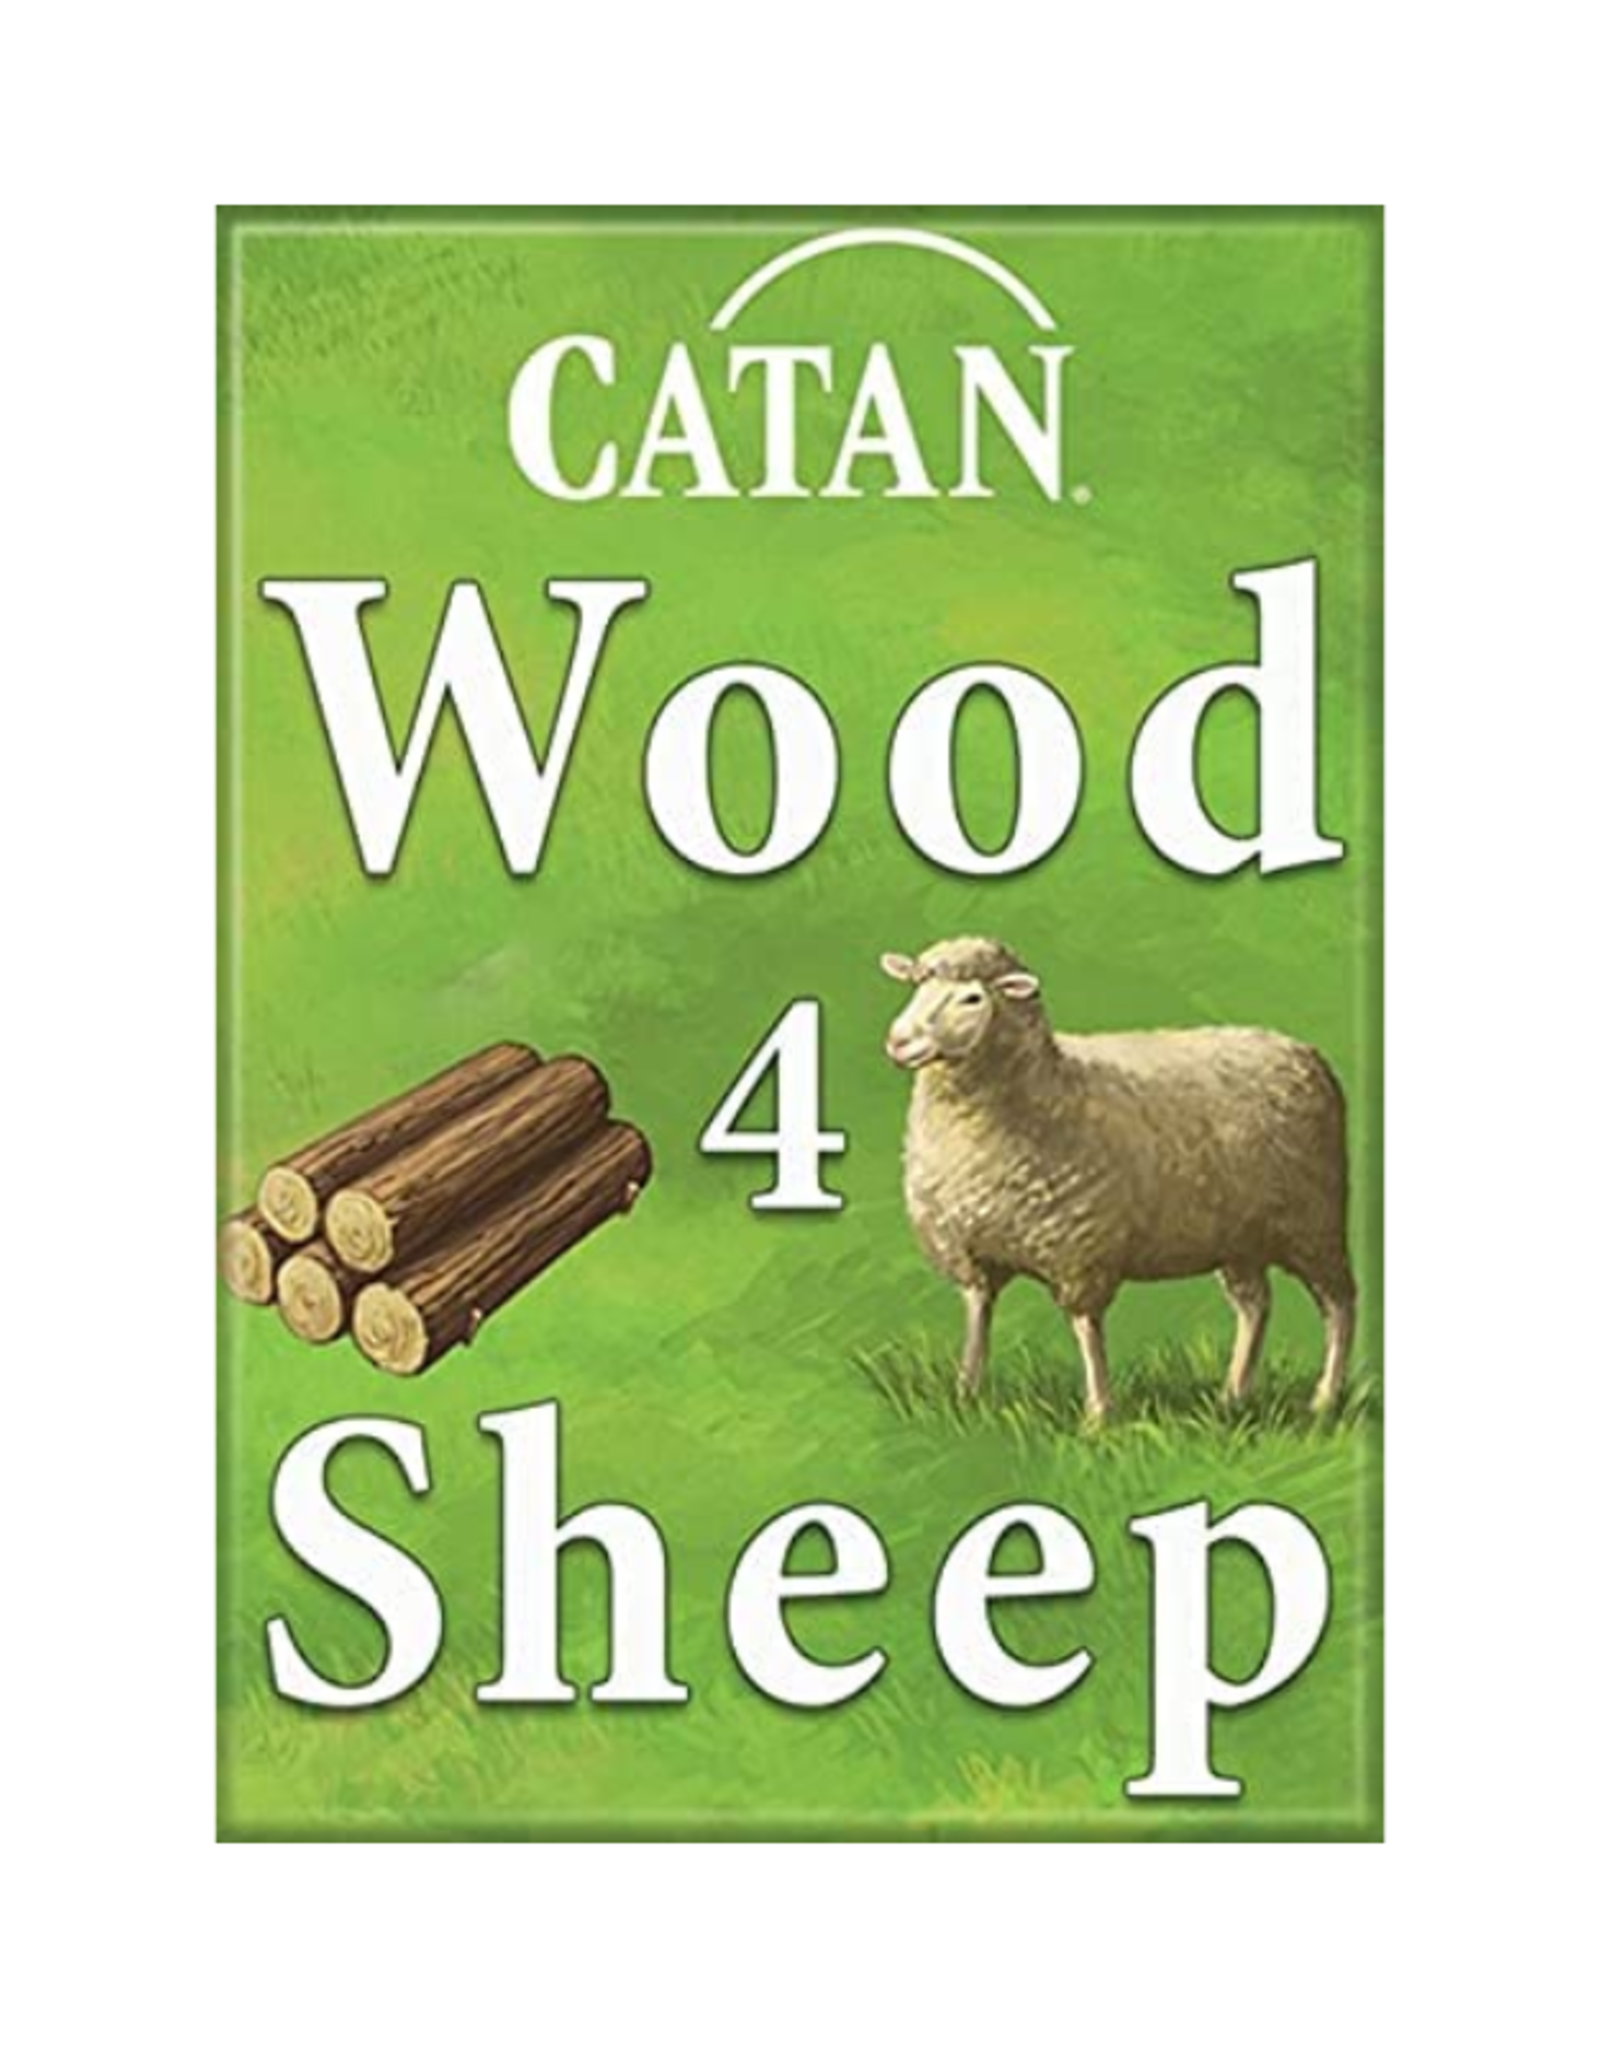 Ata-Boy Catan: Wood 4 Sheep